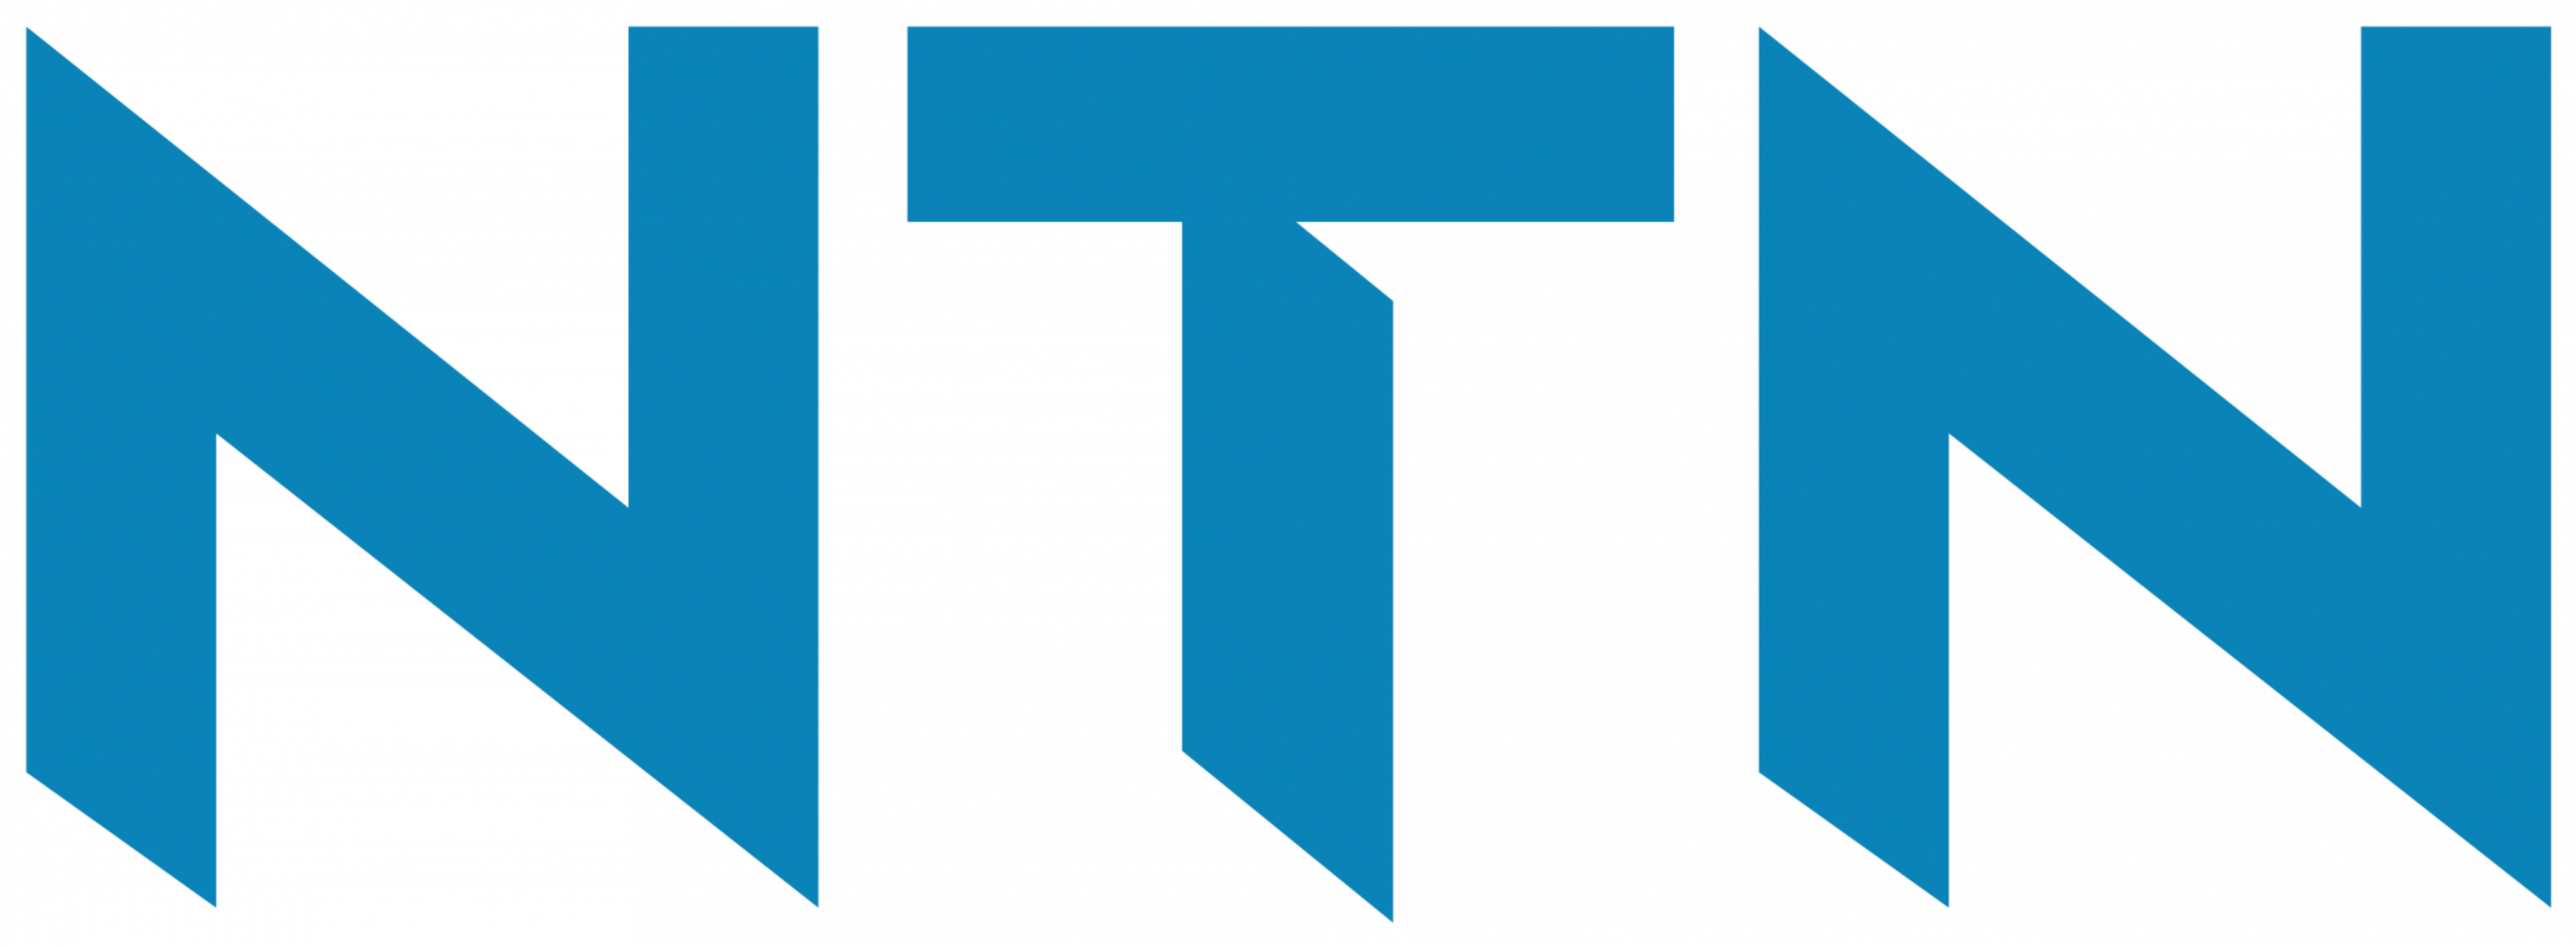 Производитель NTN логотип